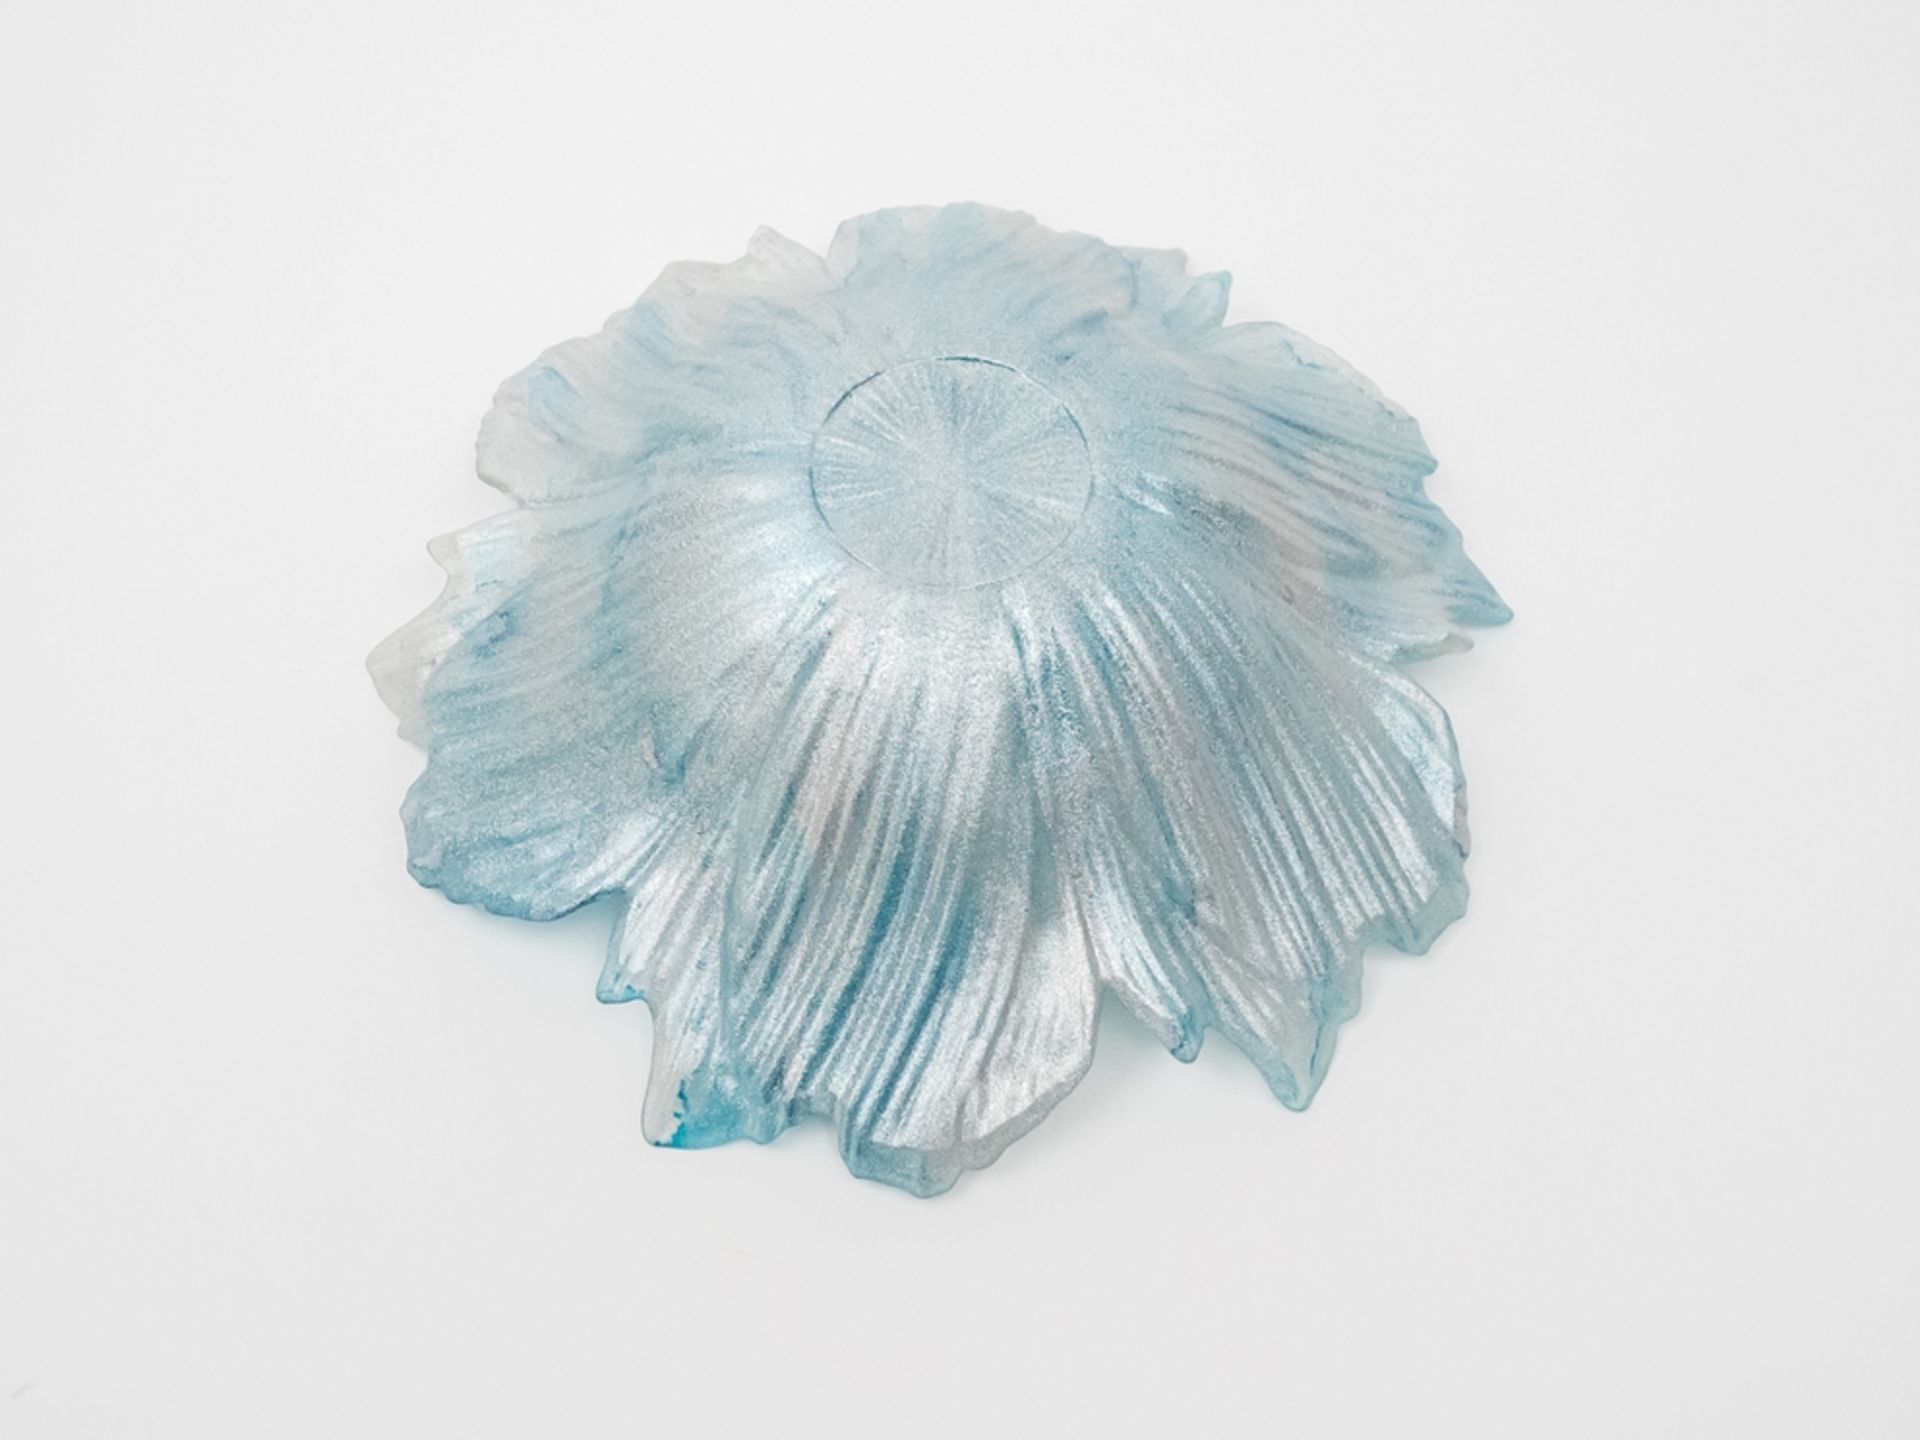 Blau-silber glitzernde Murano-Glasschale - Bild 6 aus 6